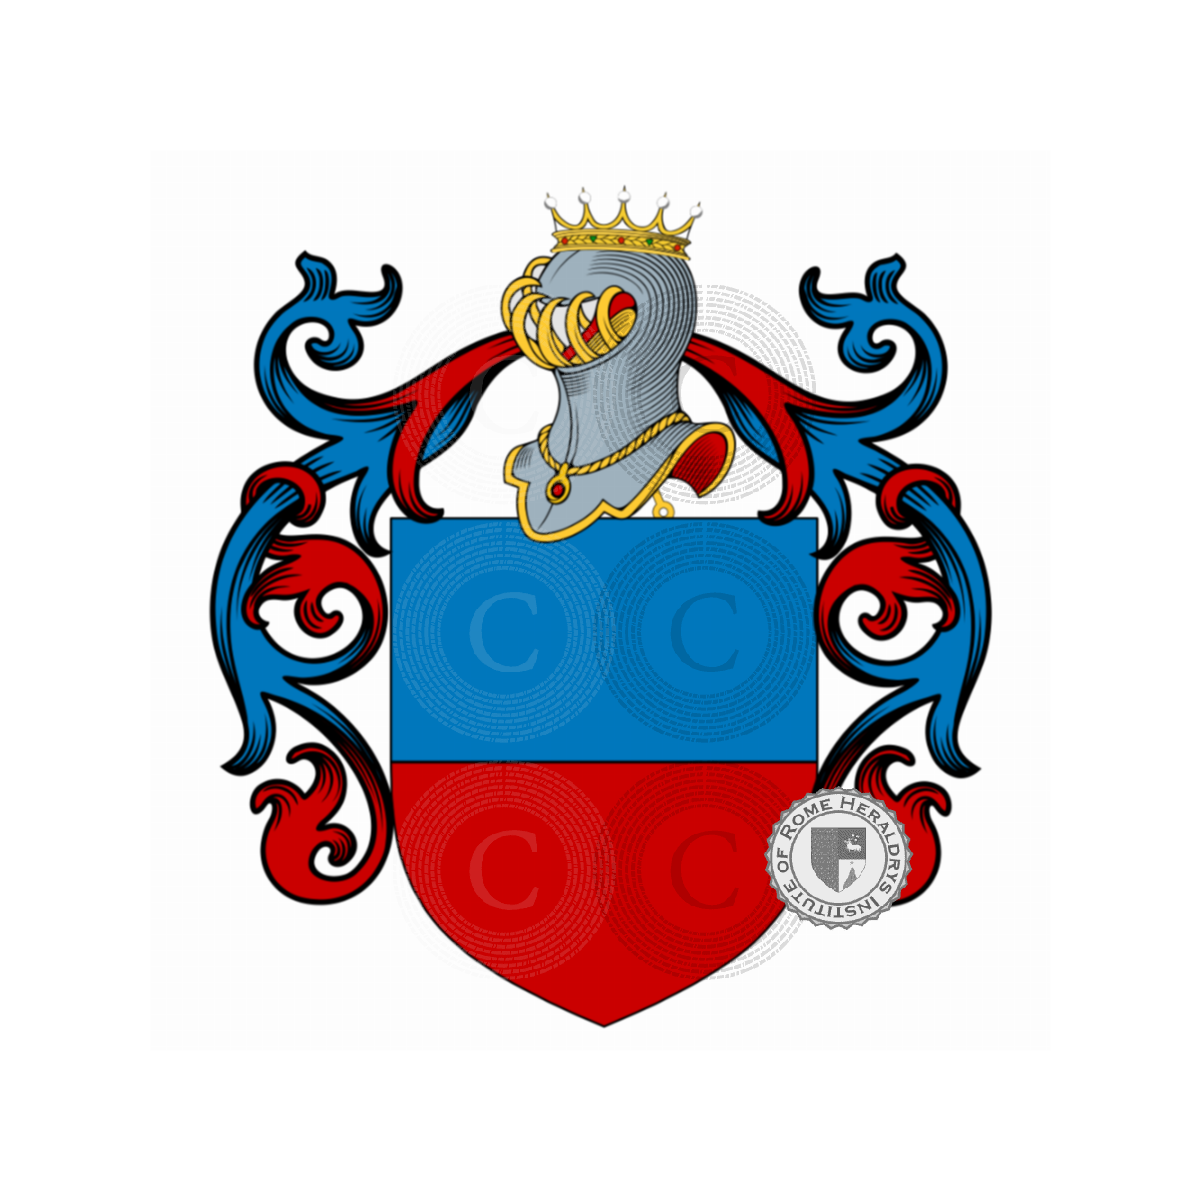 Wappen der FamilieRusso, Rosso,Russo di Cerami